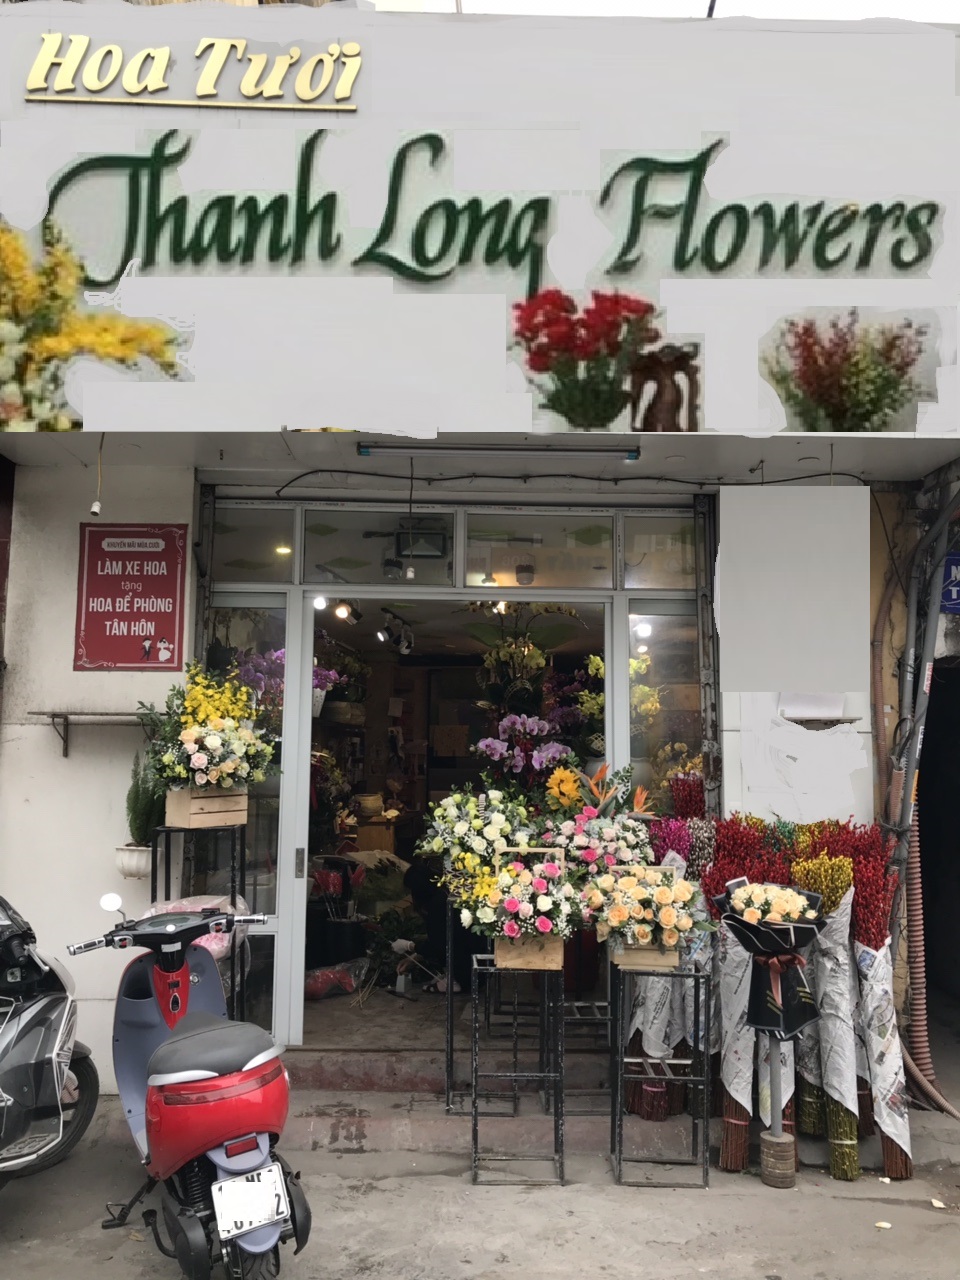 Thanh Long Flower Quảng Ngãi